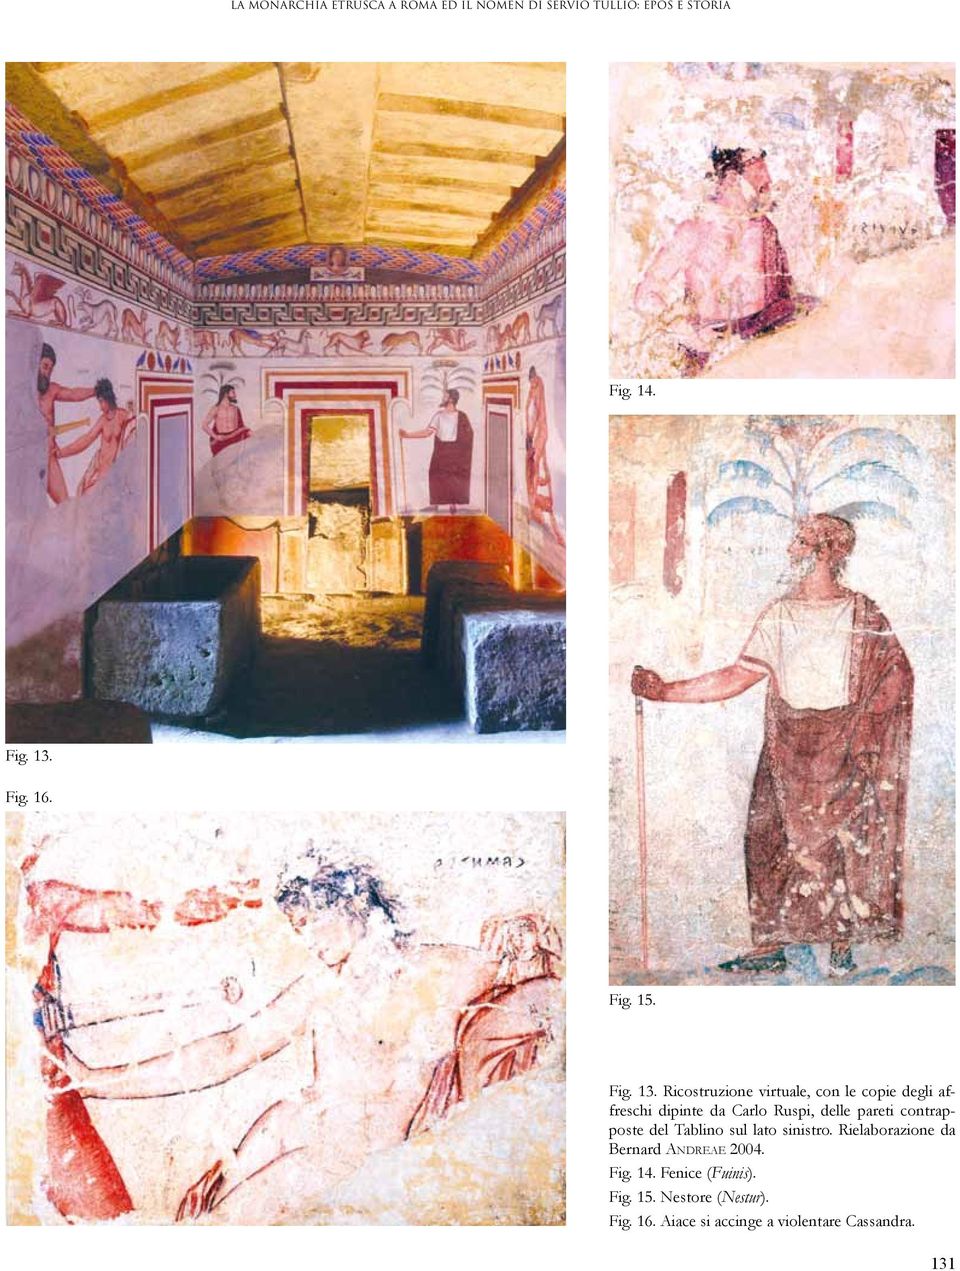 Ricostruzione virtuale, con le copie degli affreschi dipinte da Carlo Ruspi, delle pareti